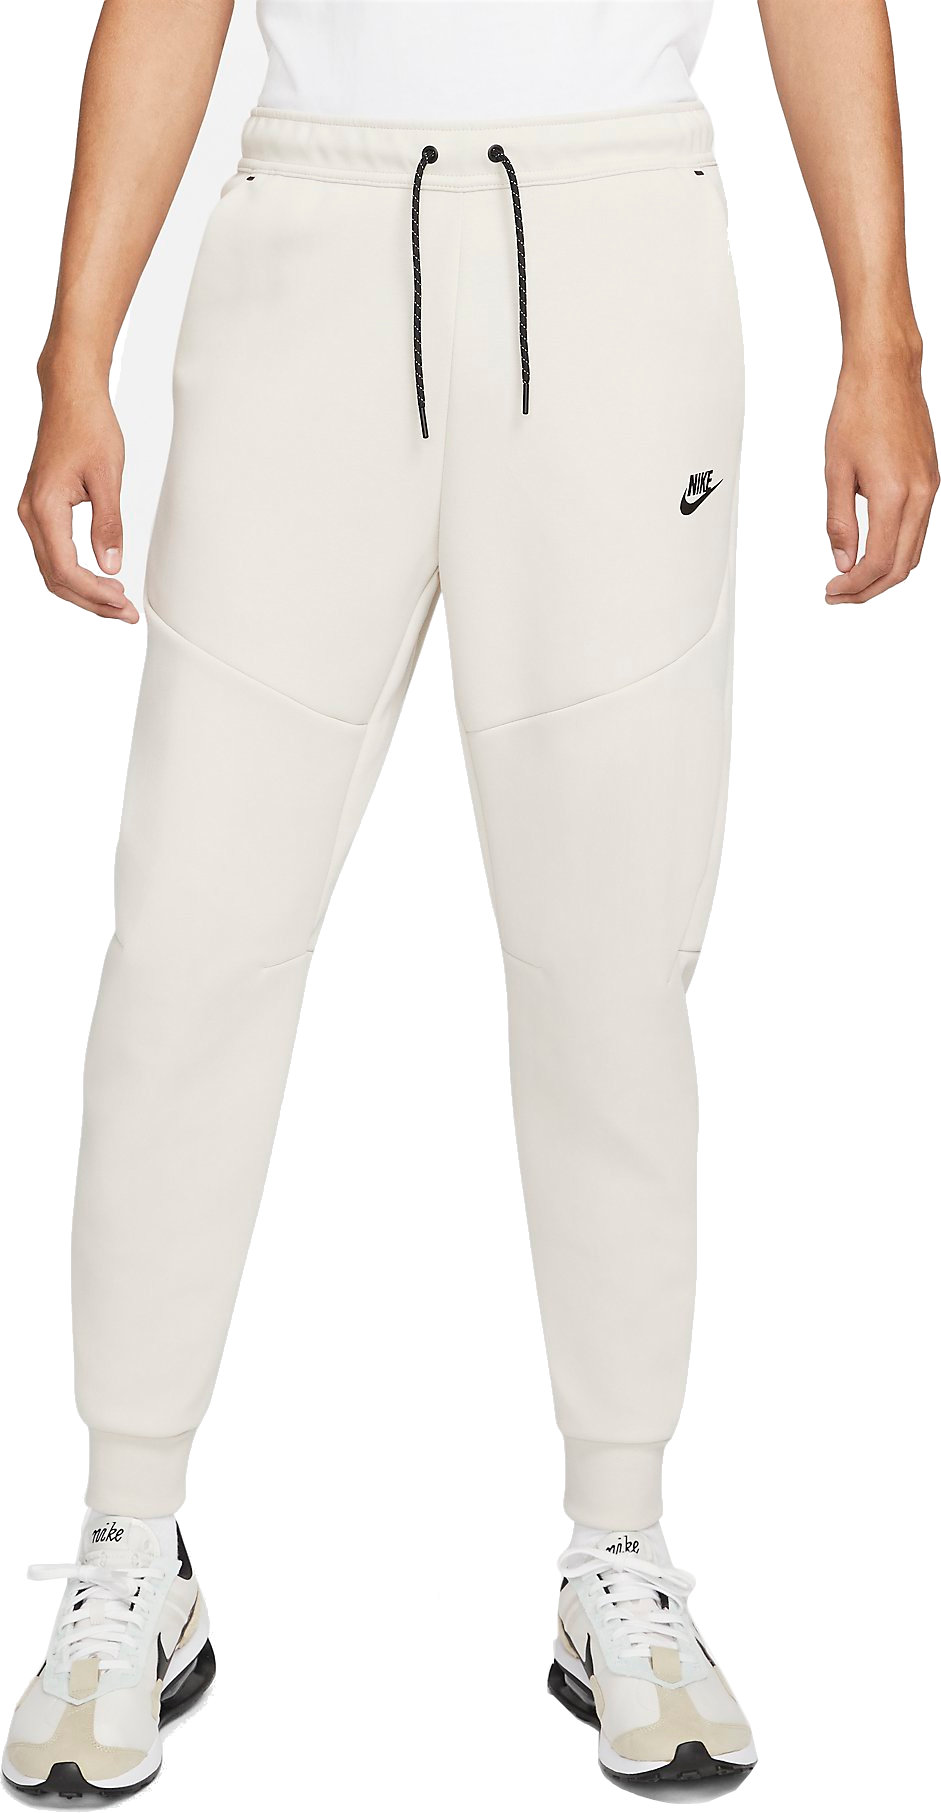 Pantalón Nike Sportswear Tech Fleece